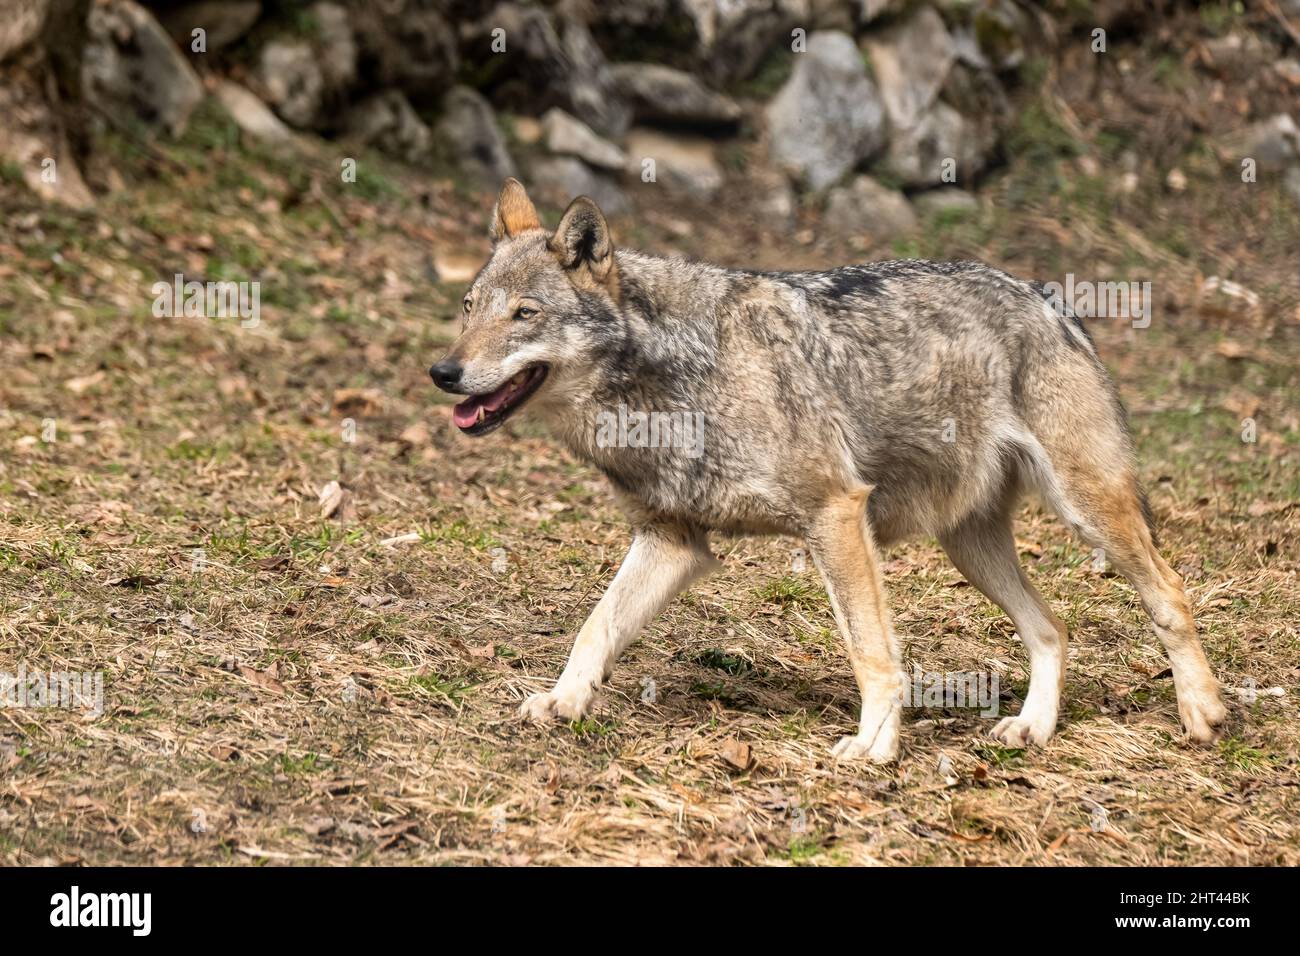 Italian wolf (canis lupus italicus) in wildlife center 'Uomini e Stock Photo